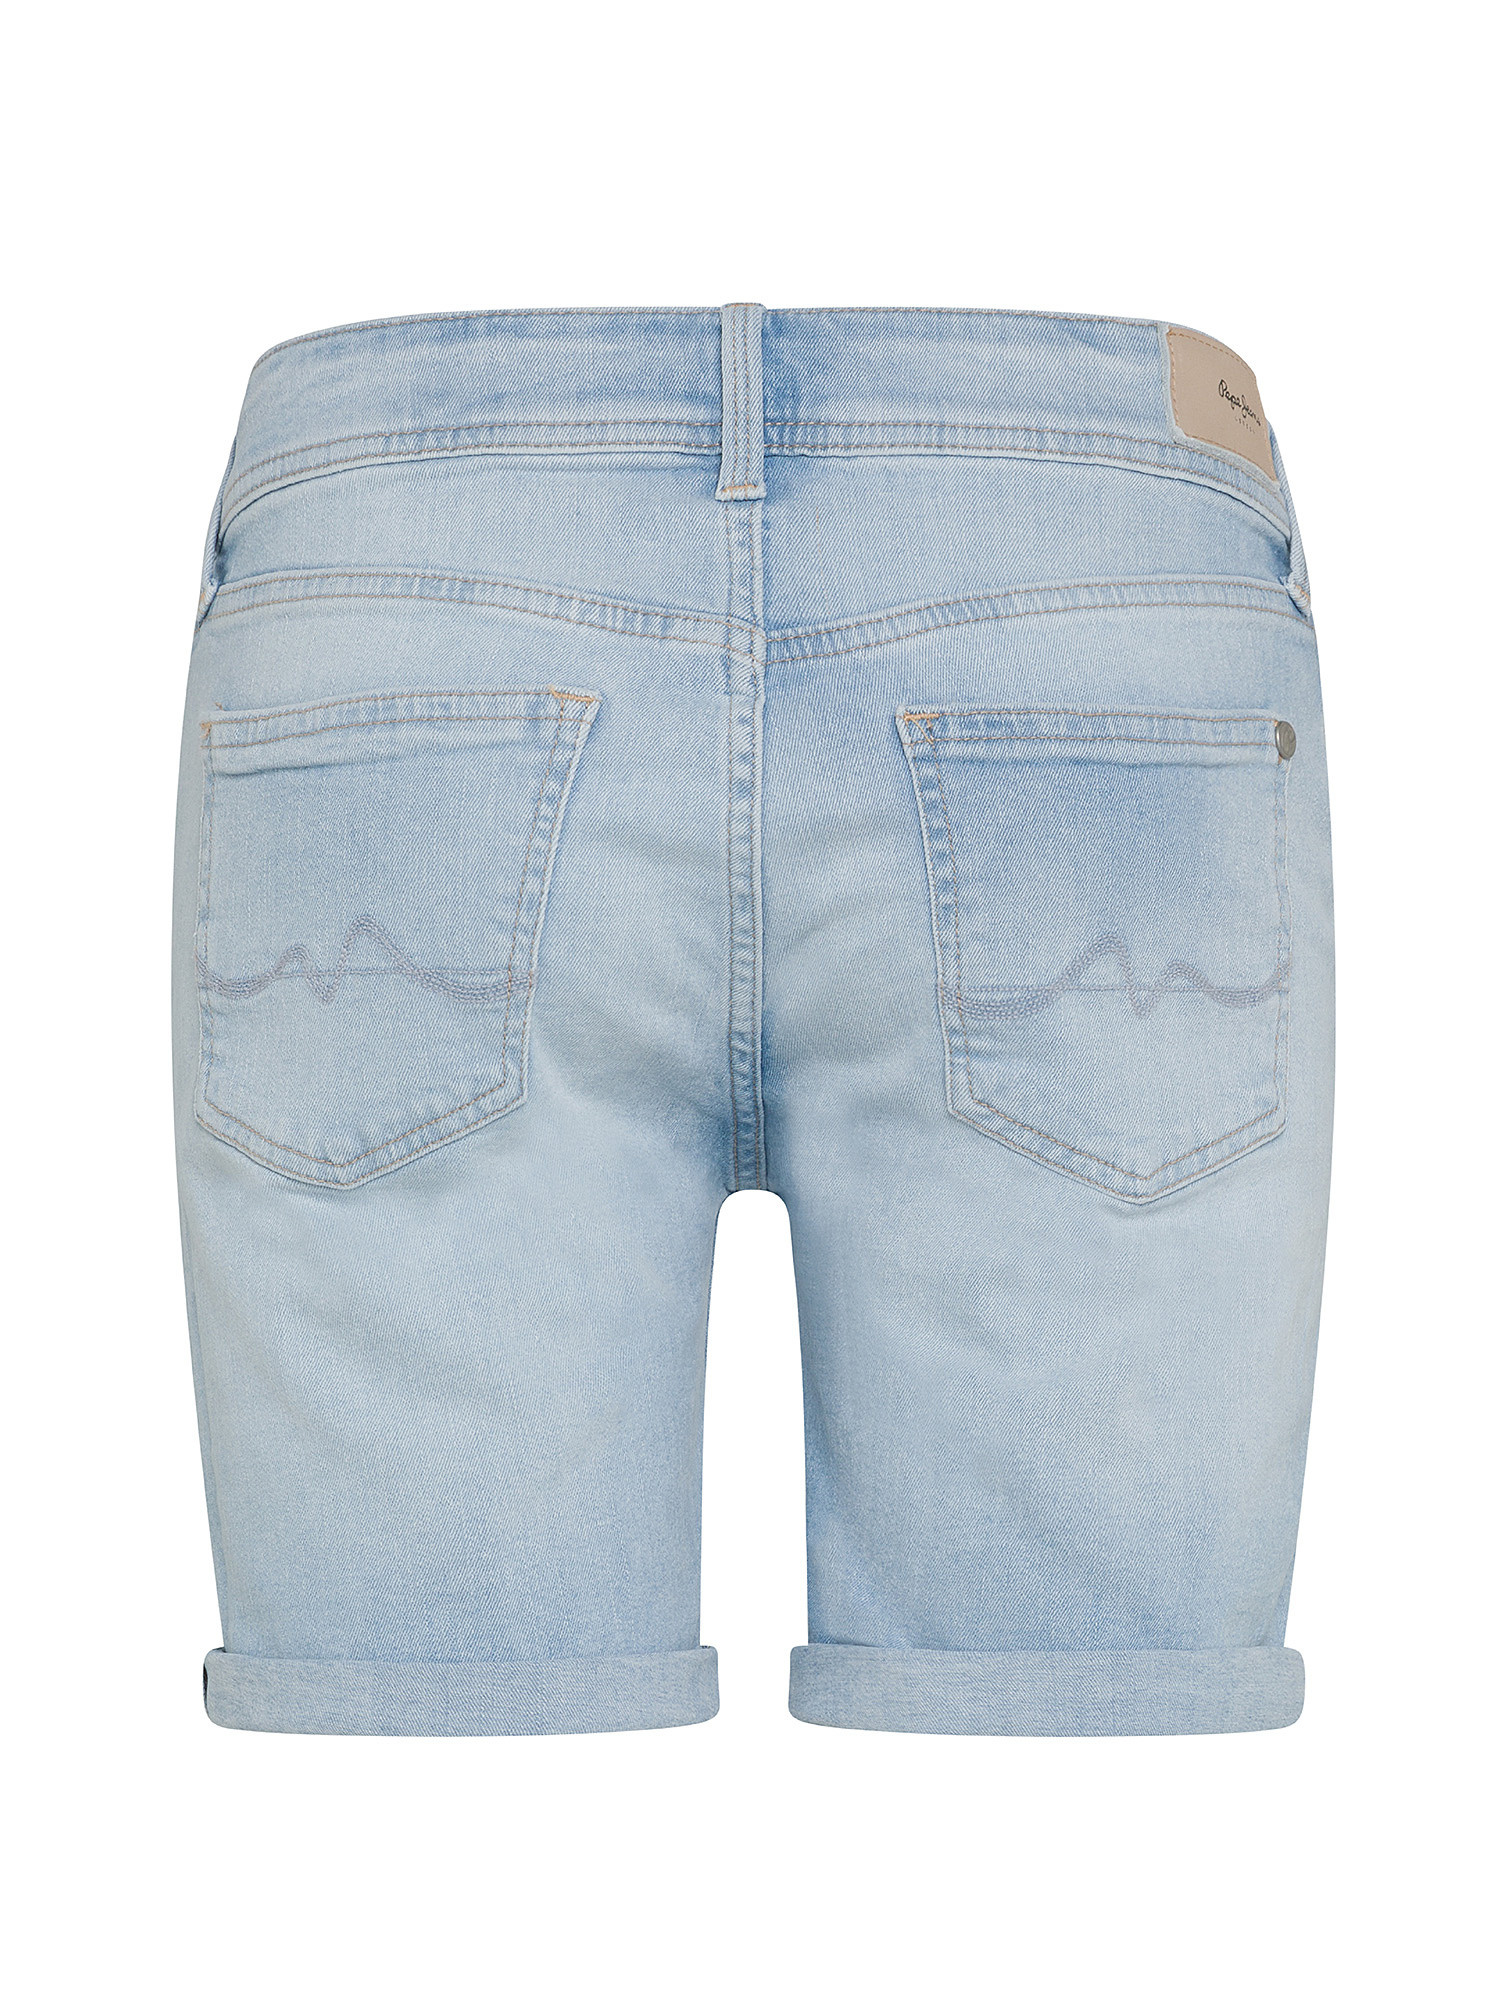 Pepe Jeans - Regular fit denim shorts, Denim, large image number 1